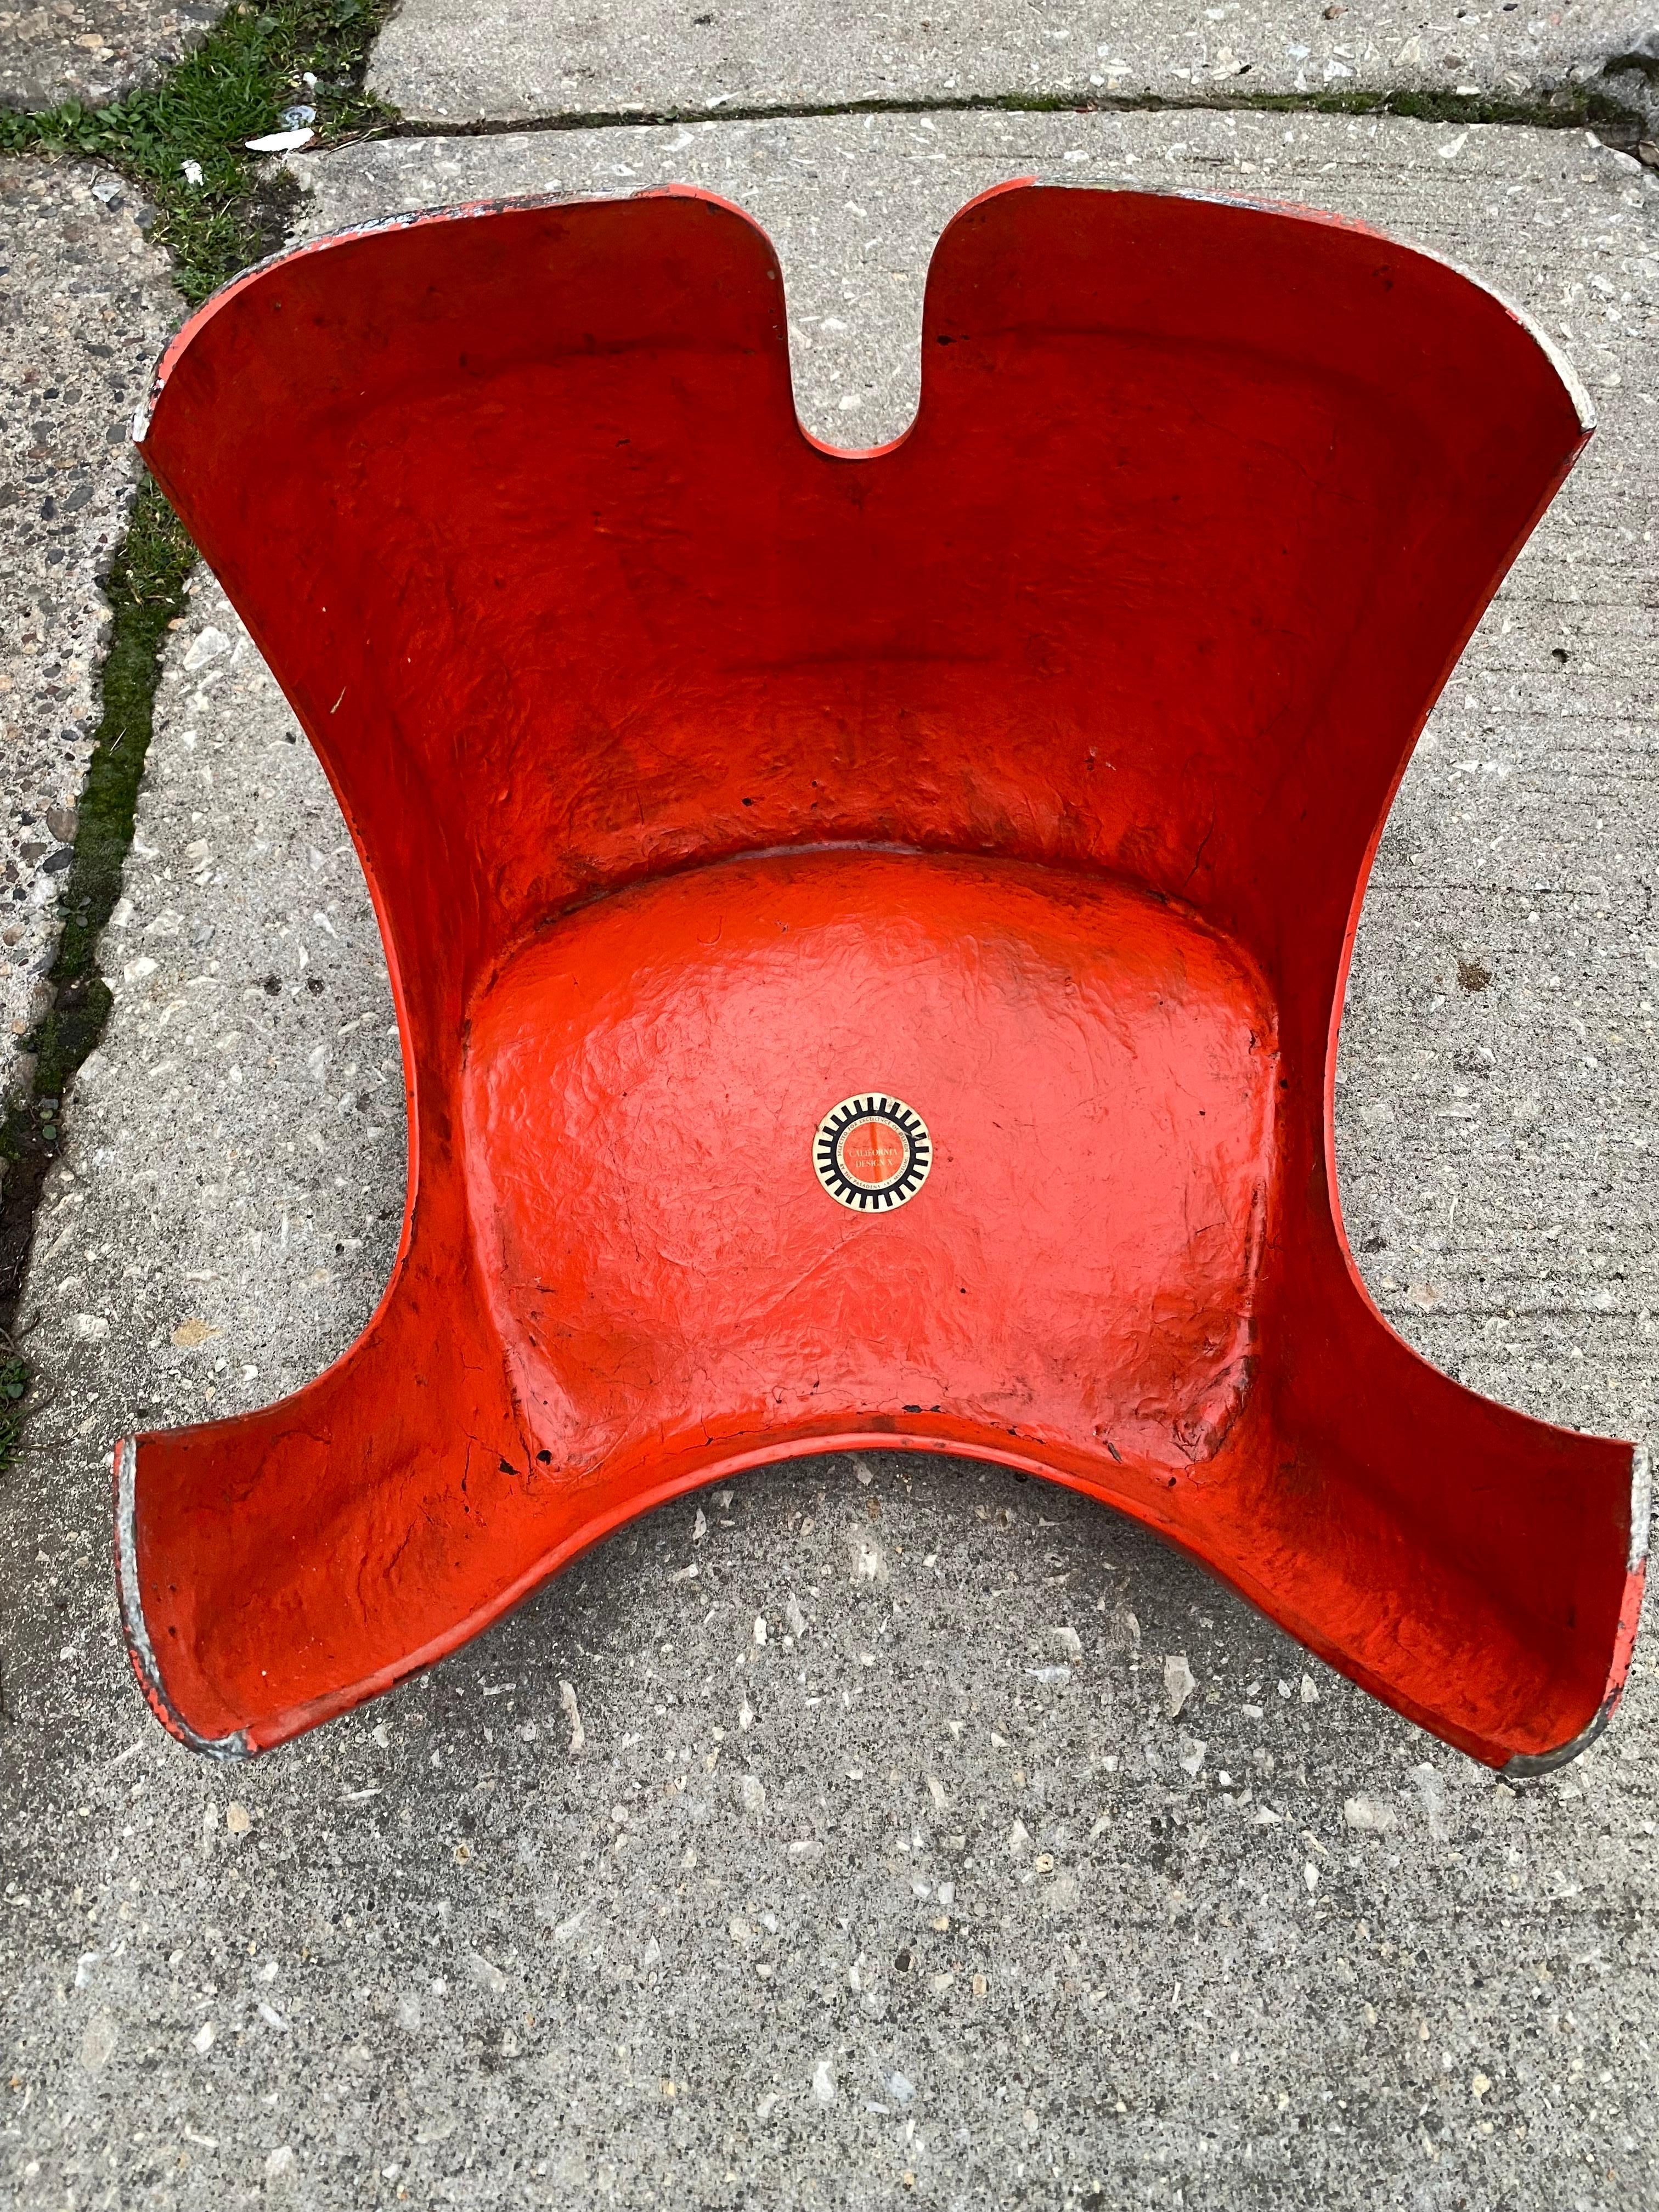 Stacy Dukes Prototype Fiberglass stool from California Design 10/ 1968  For Sale 6